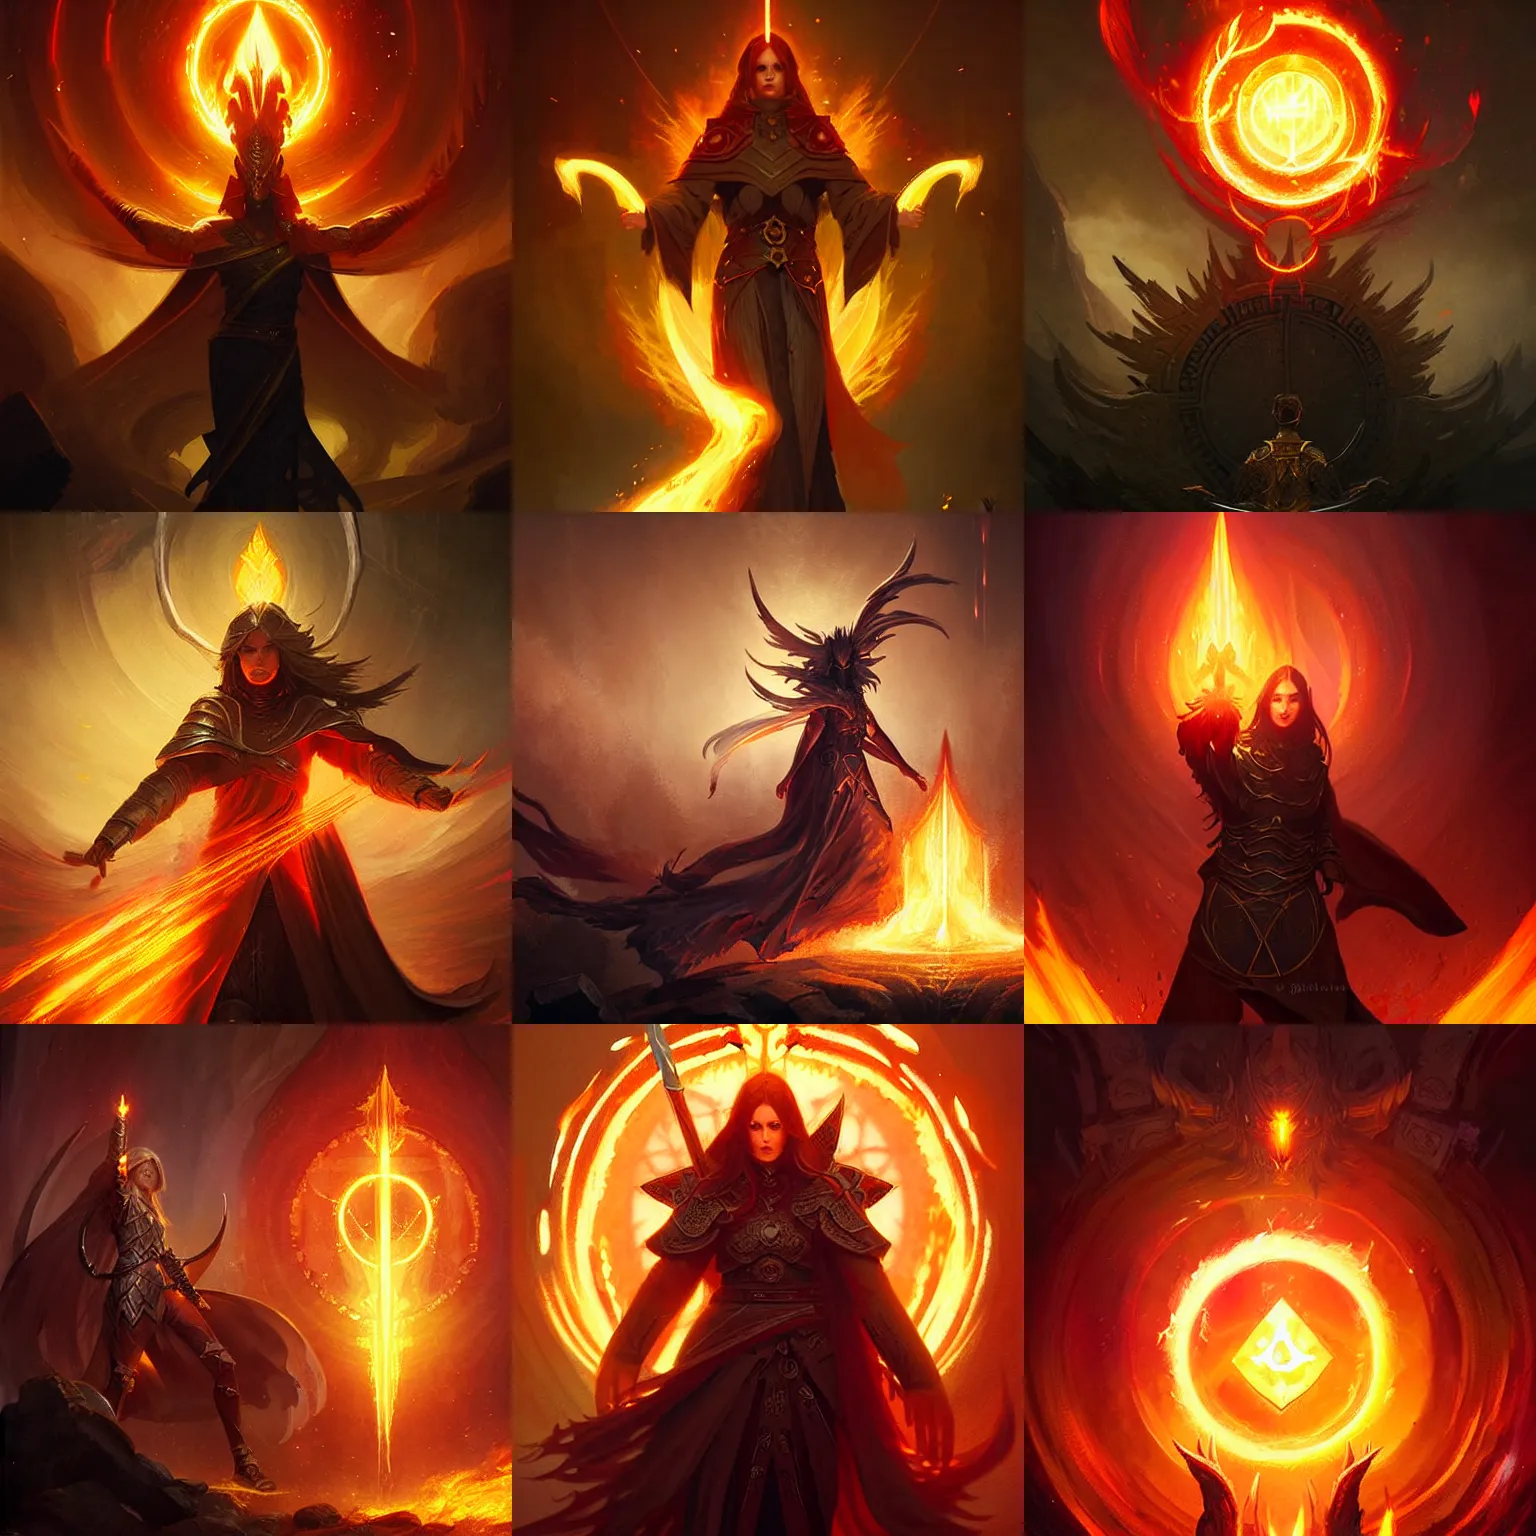 Prompt: holy fire spell, paladin spell, digital painting art, elden ring, fantasy game spell symbol, by greg rutkowski